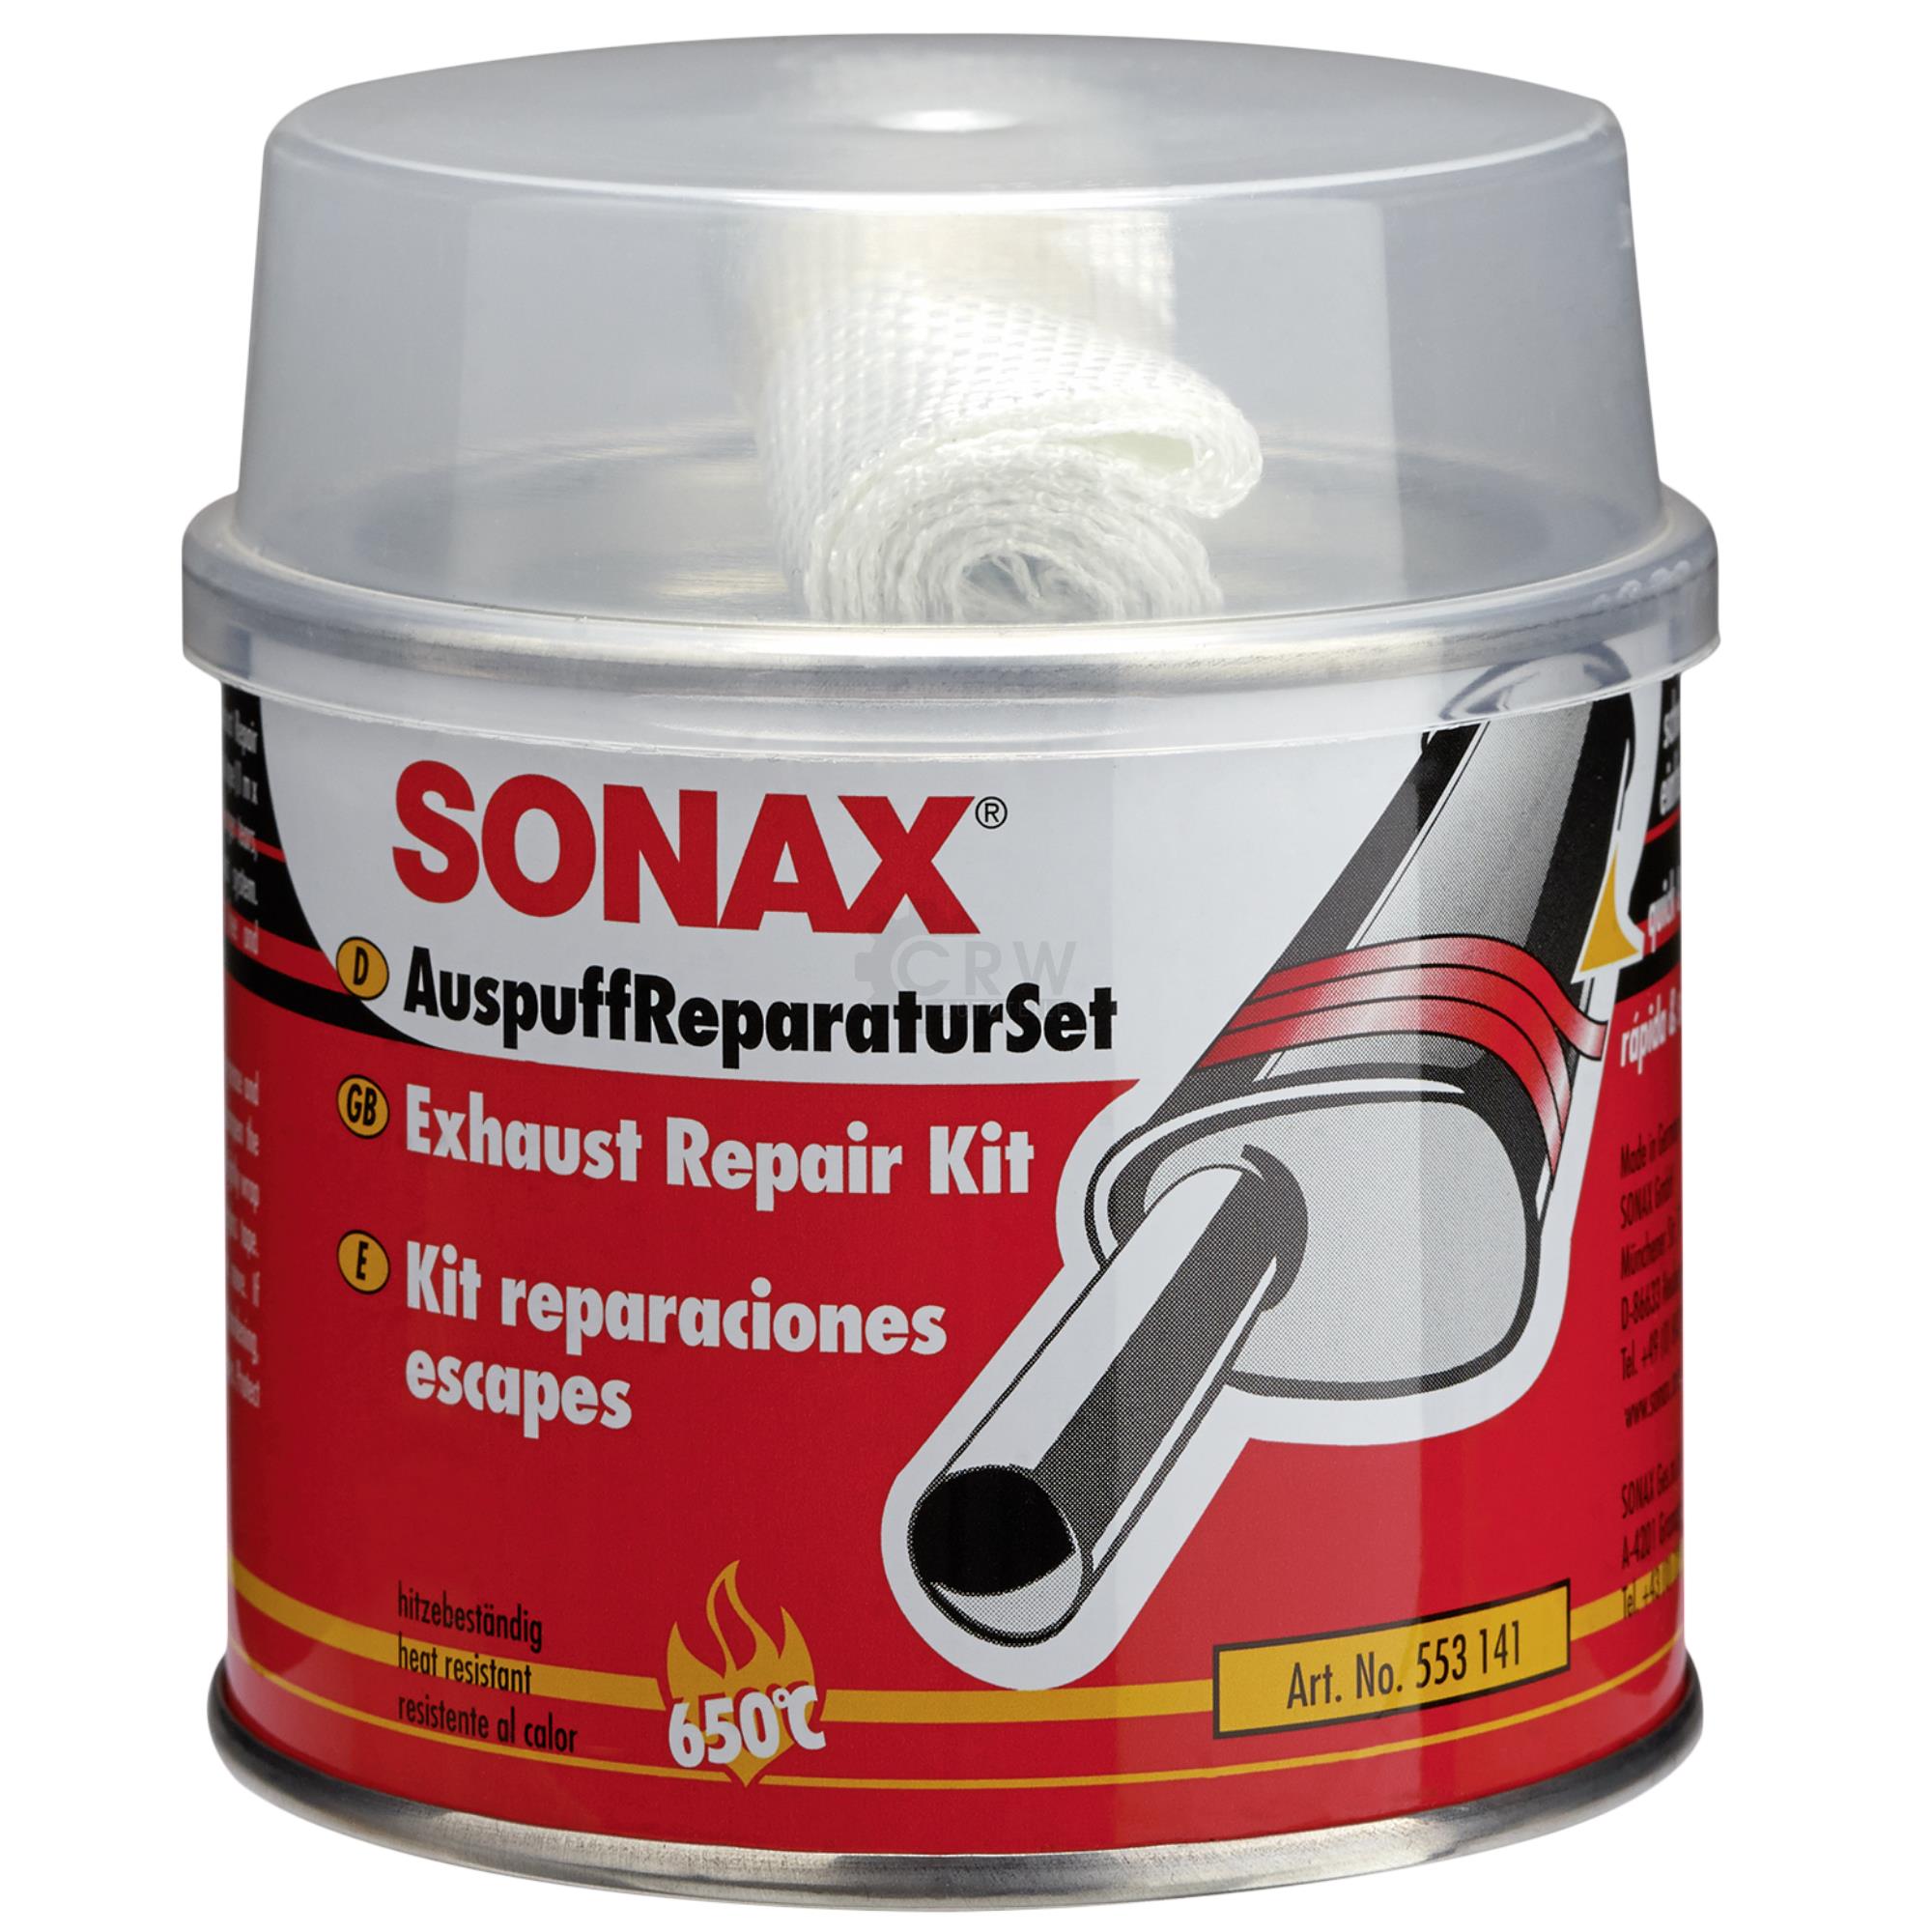 SONAX AuspuffReparaturSet Auspuffpaste Dichtmasse Asbestfrei 200 ml